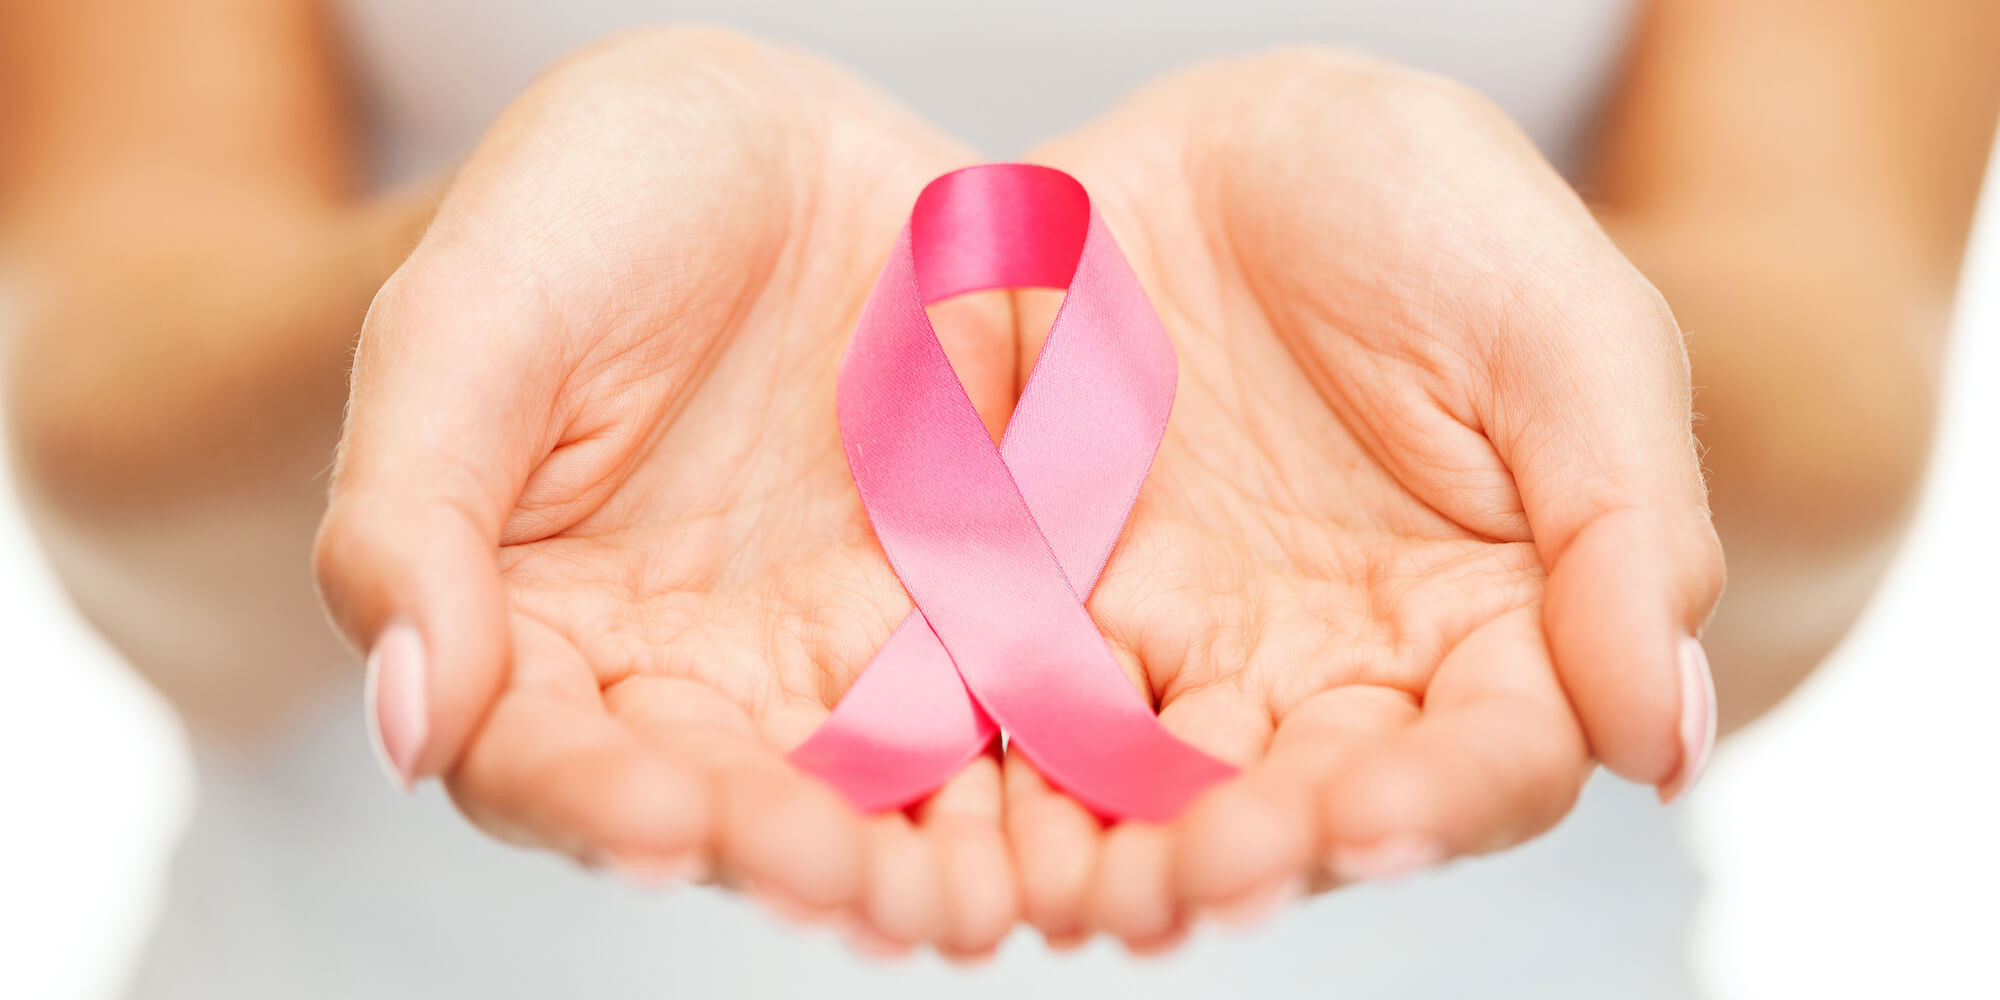 Καρκίνος μαστού: Πέντε στρατηγικές που αποτρέπουν την επανεμφάνισή του